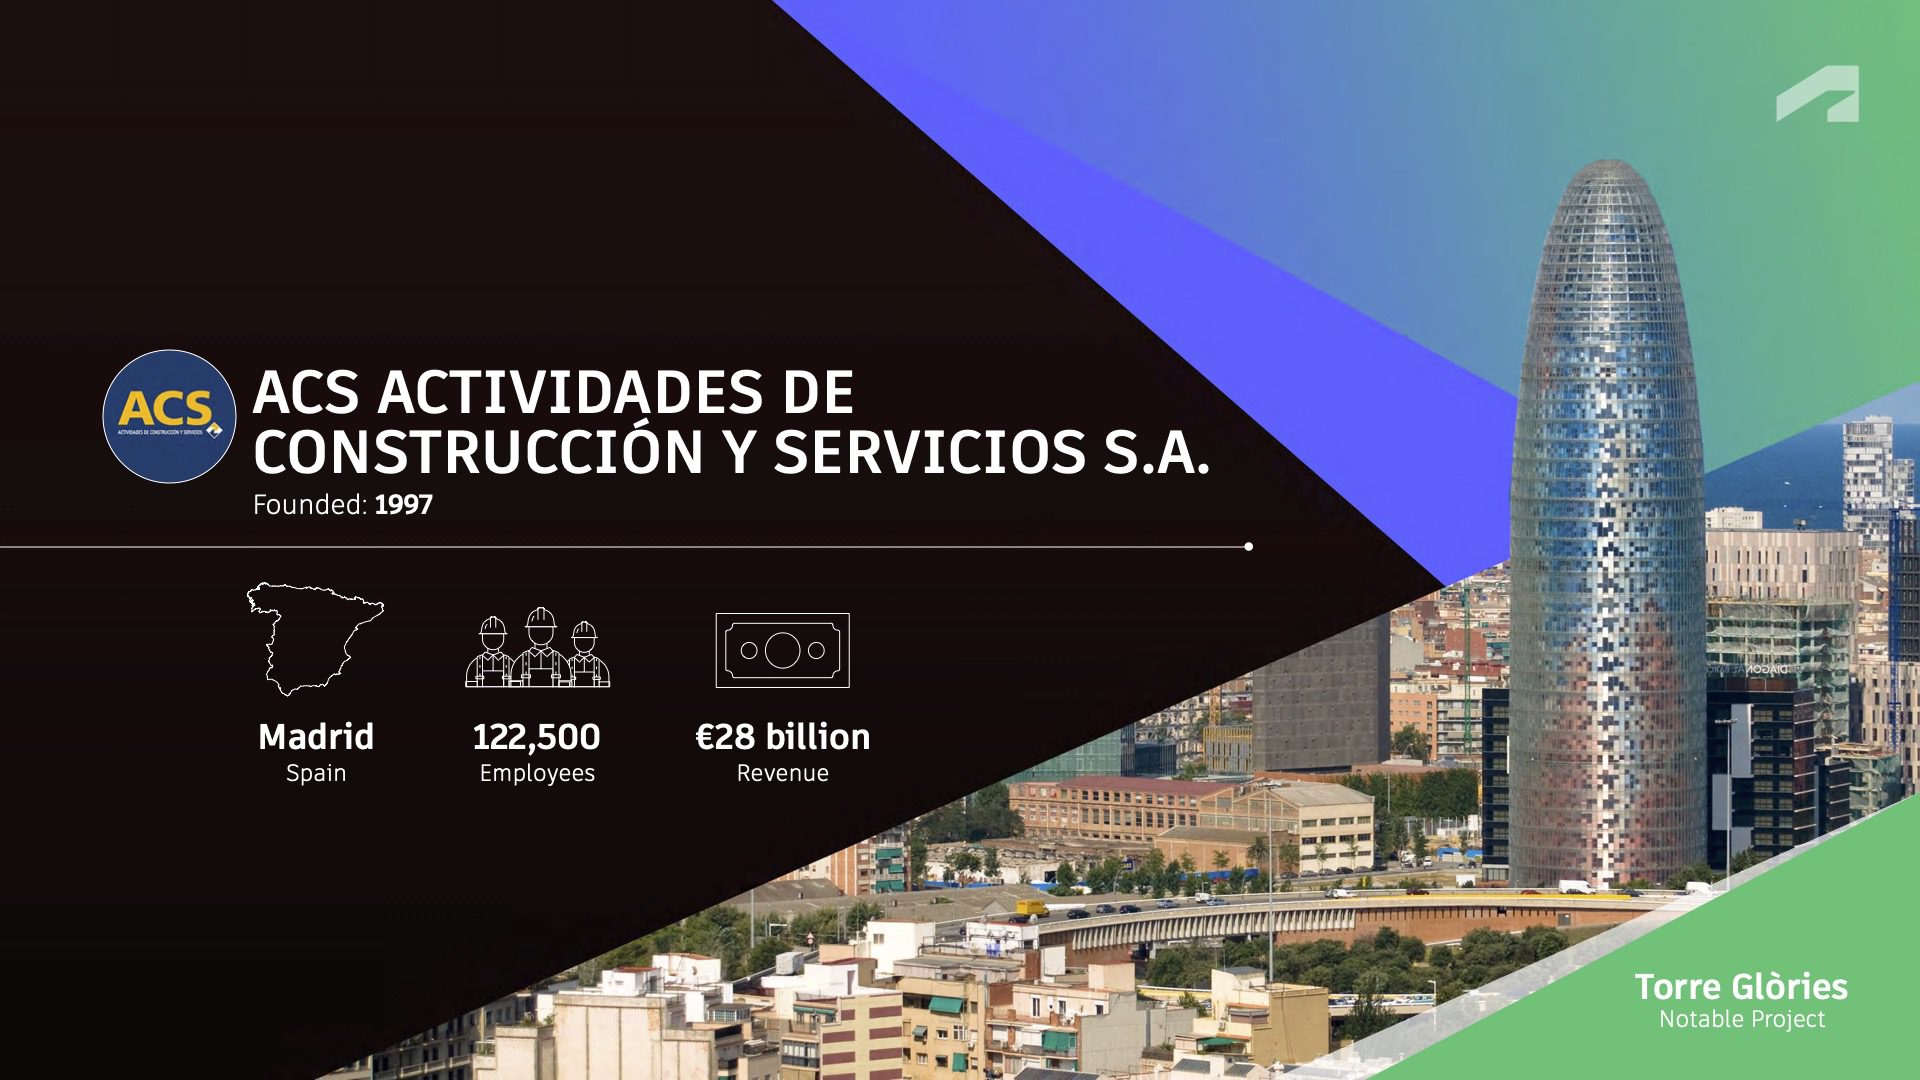 第1名:ACS Actividades de Construcción y Servicios S.A.顶级建筑公司